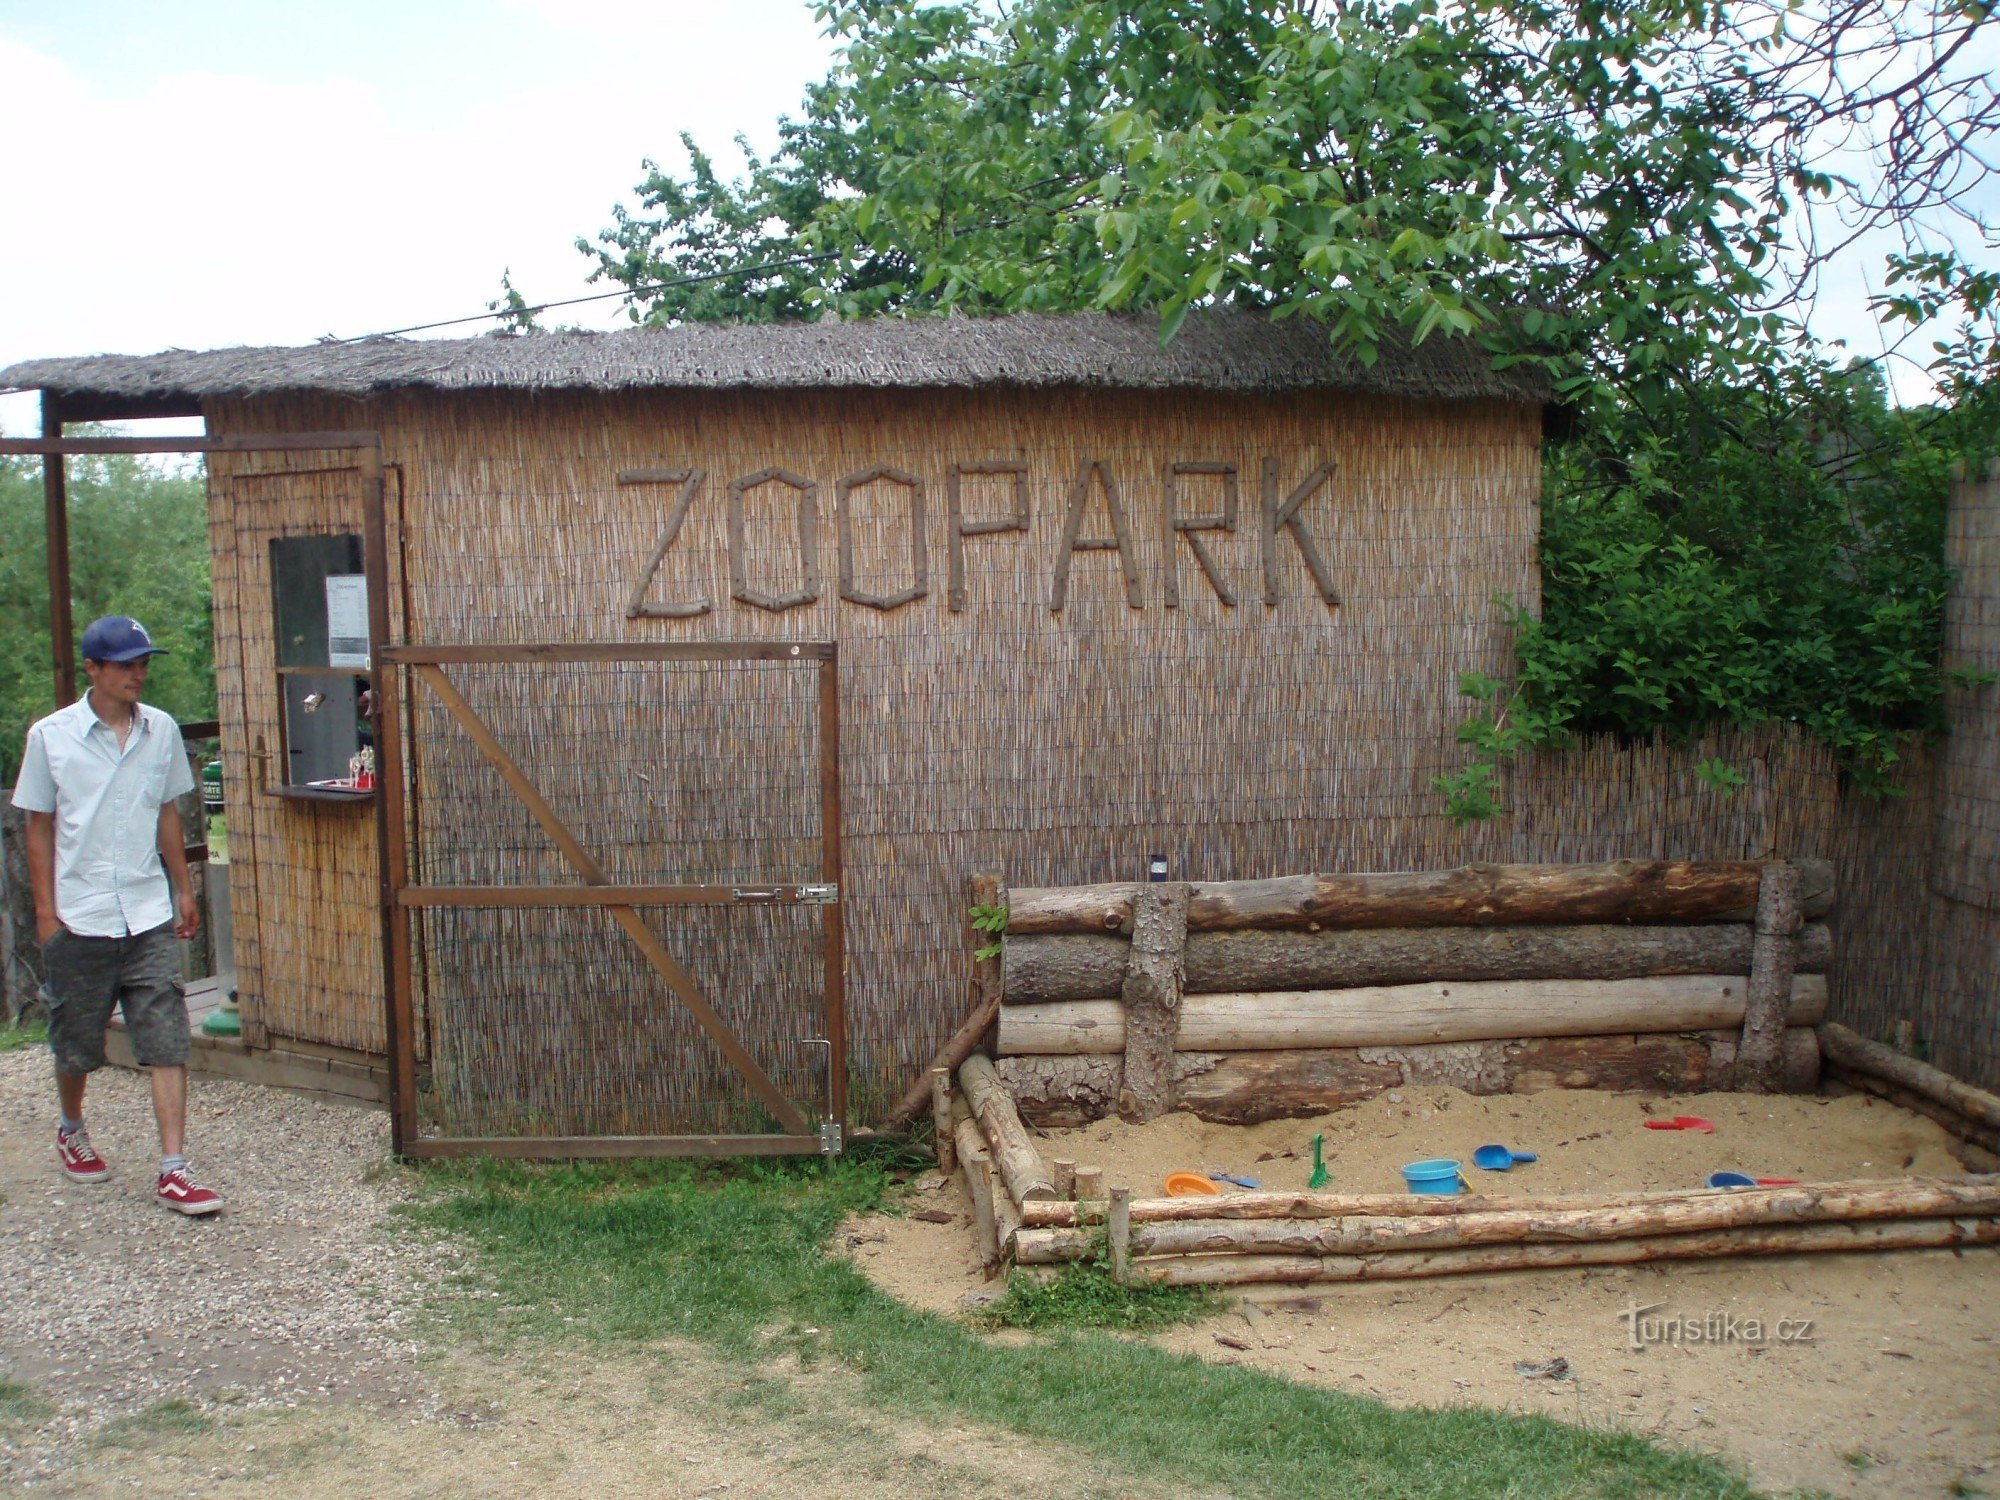 Wejście do ogrodu zoologicznego